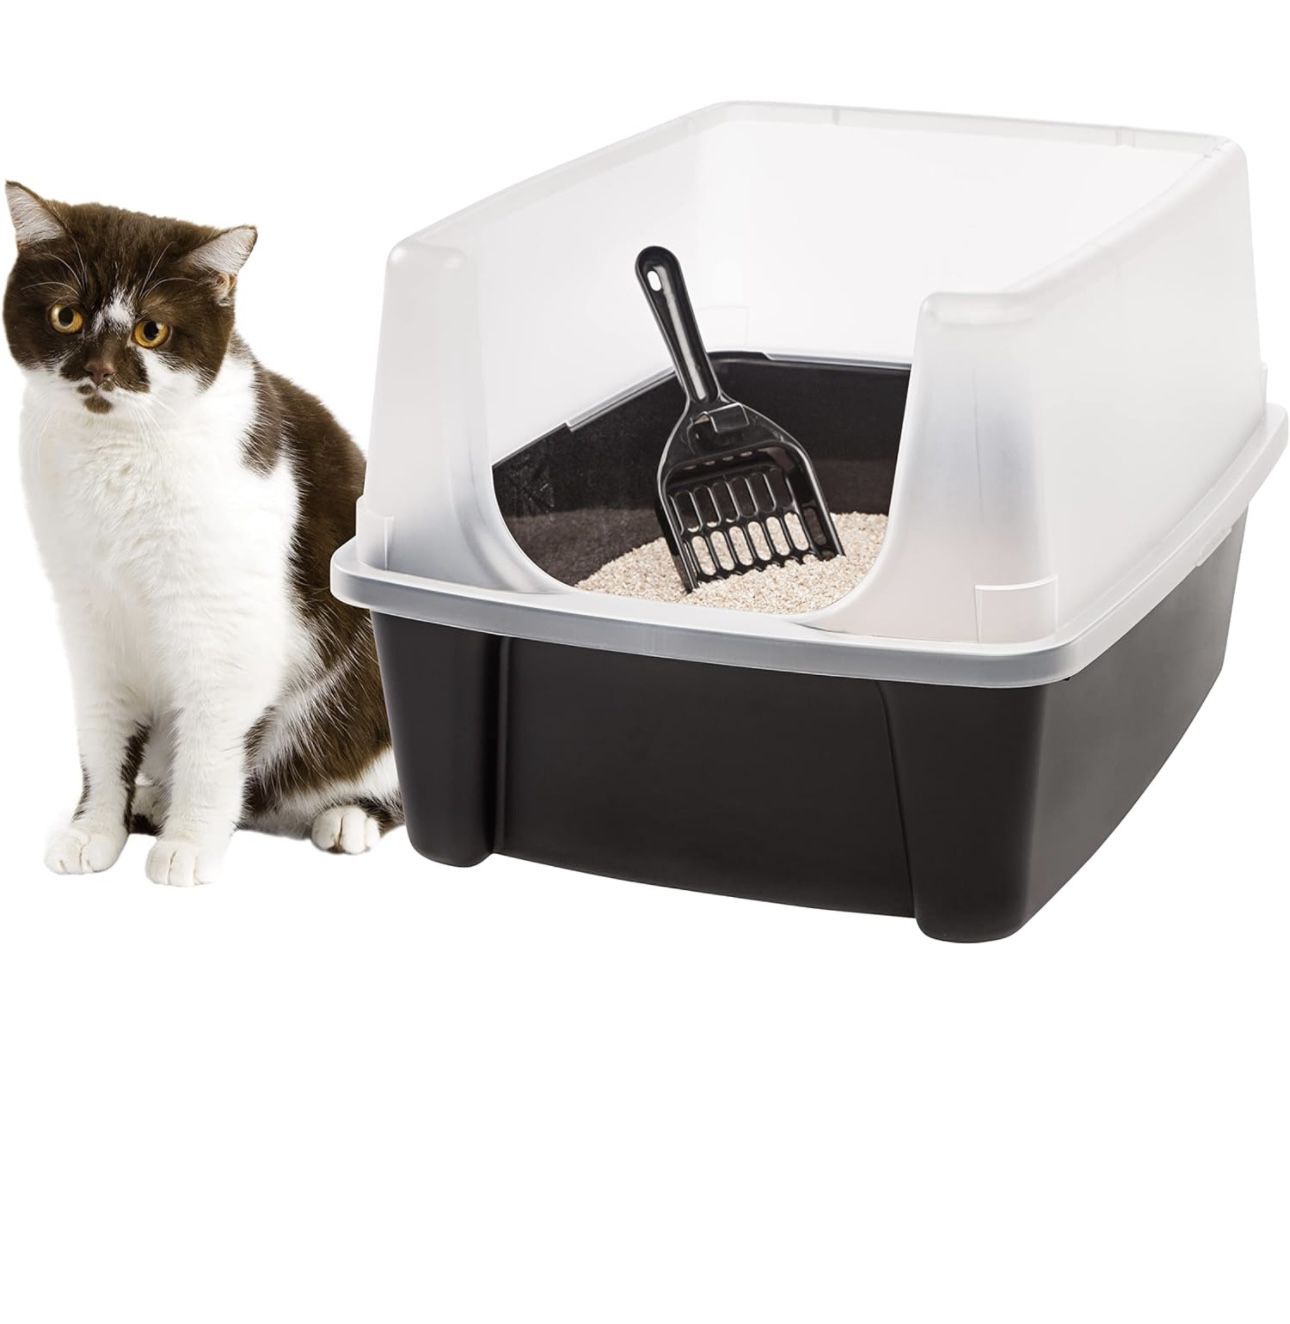 Caja de arena para gatos IRIS USA, arenero para gatos con escudo y pala para arena, color negro